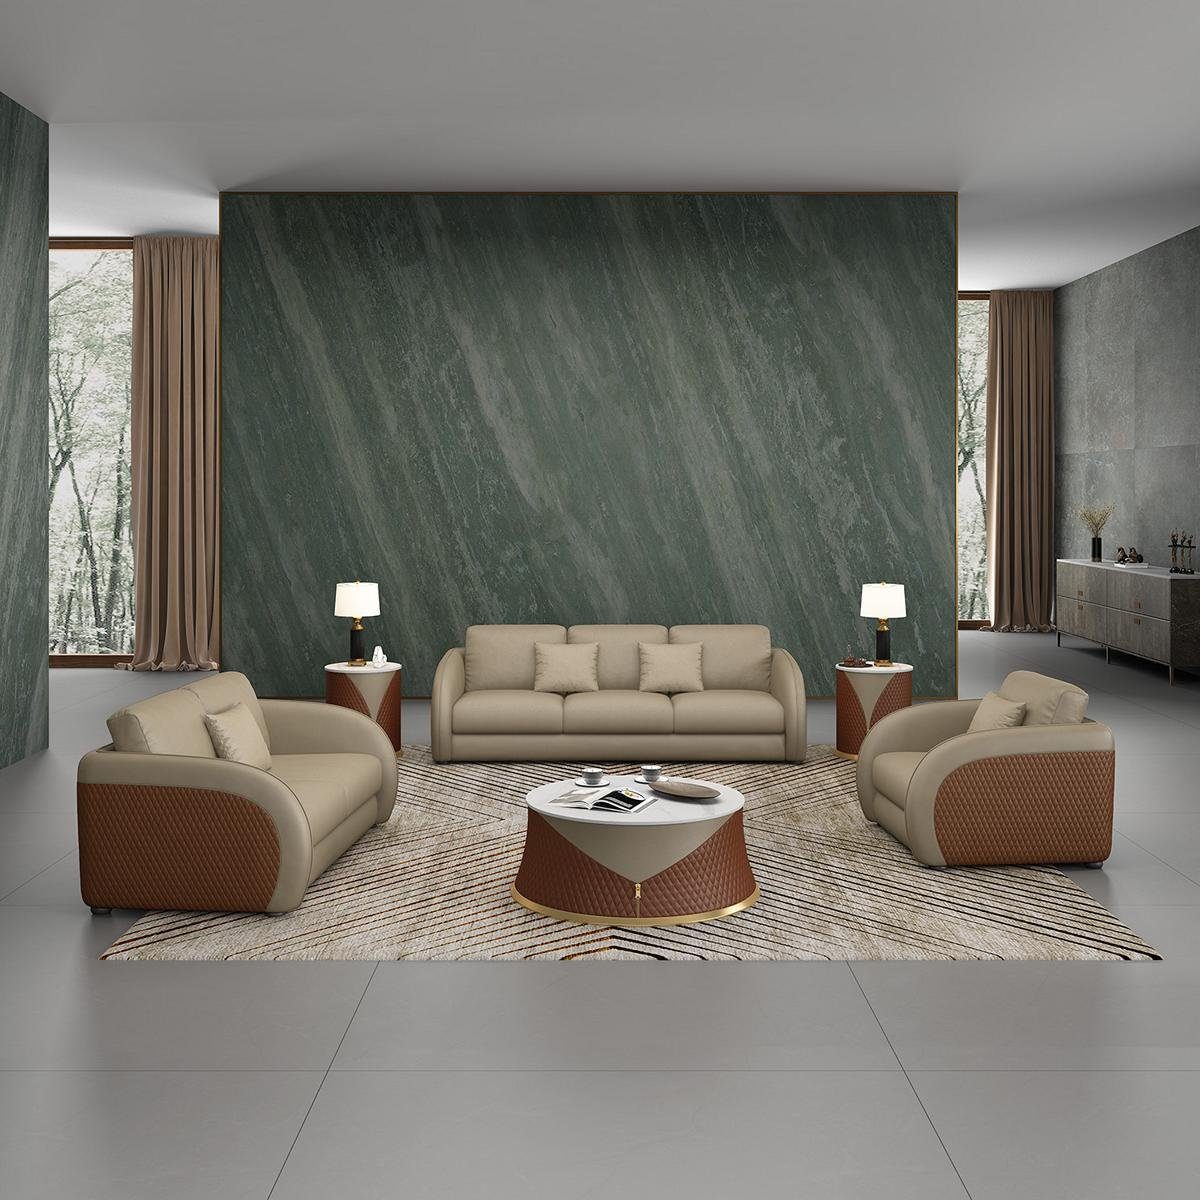 JVmoebel Wohnzimmer-Set, Sofagarnitur Couch Polster Grau/Braun 2 Couchen 3 Design Sitzer 1 Set Sofa